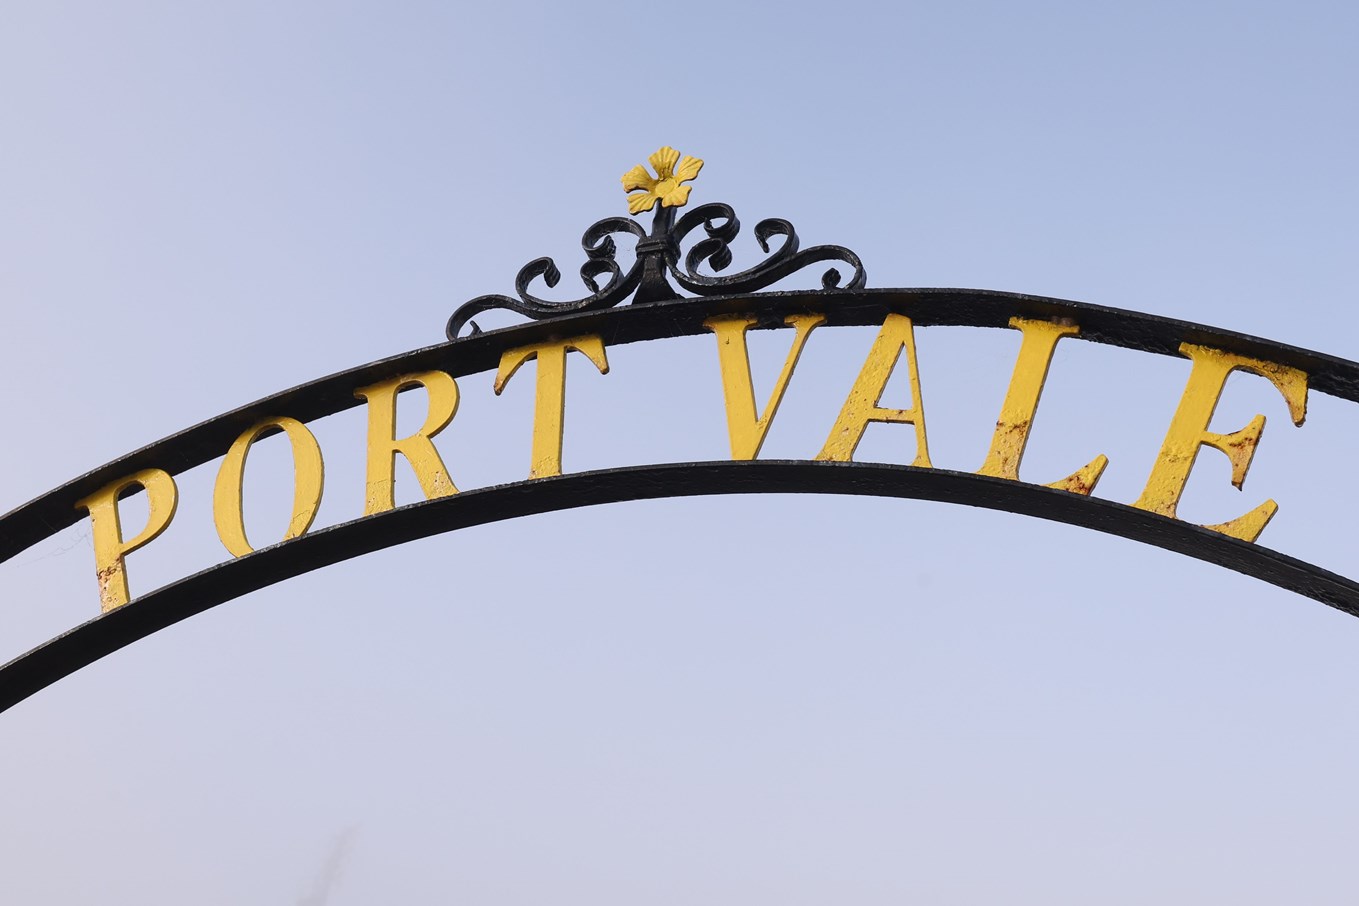 www.port-vale.co.uk